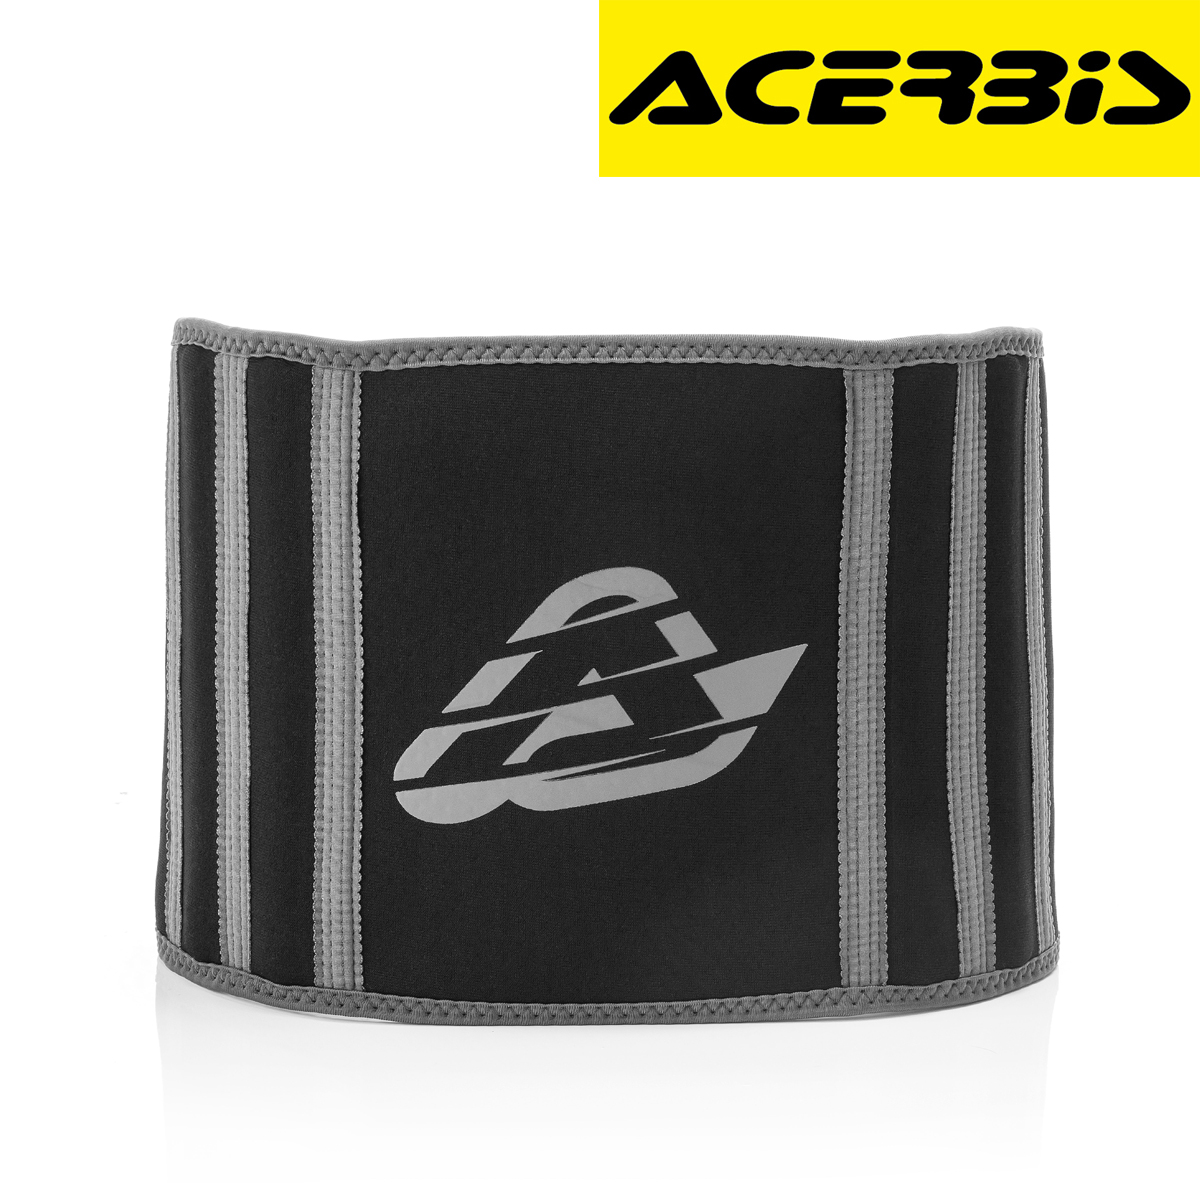 Pojas za leđa za motor Acerbis K-Belt - SC